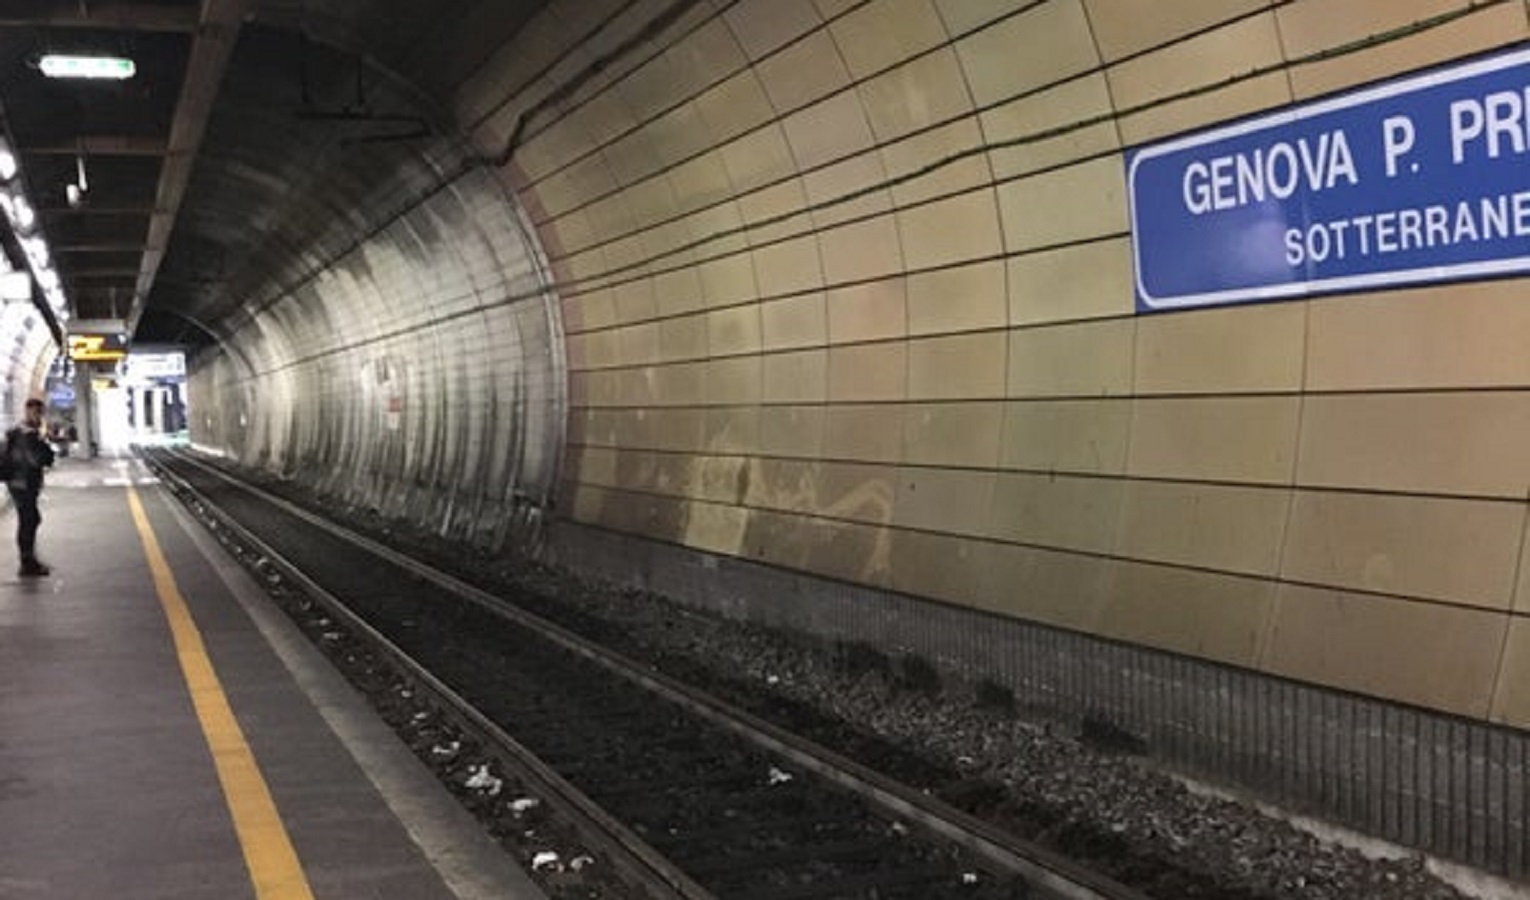 Genova, stop alla linea sotterranea Principe per lavori 